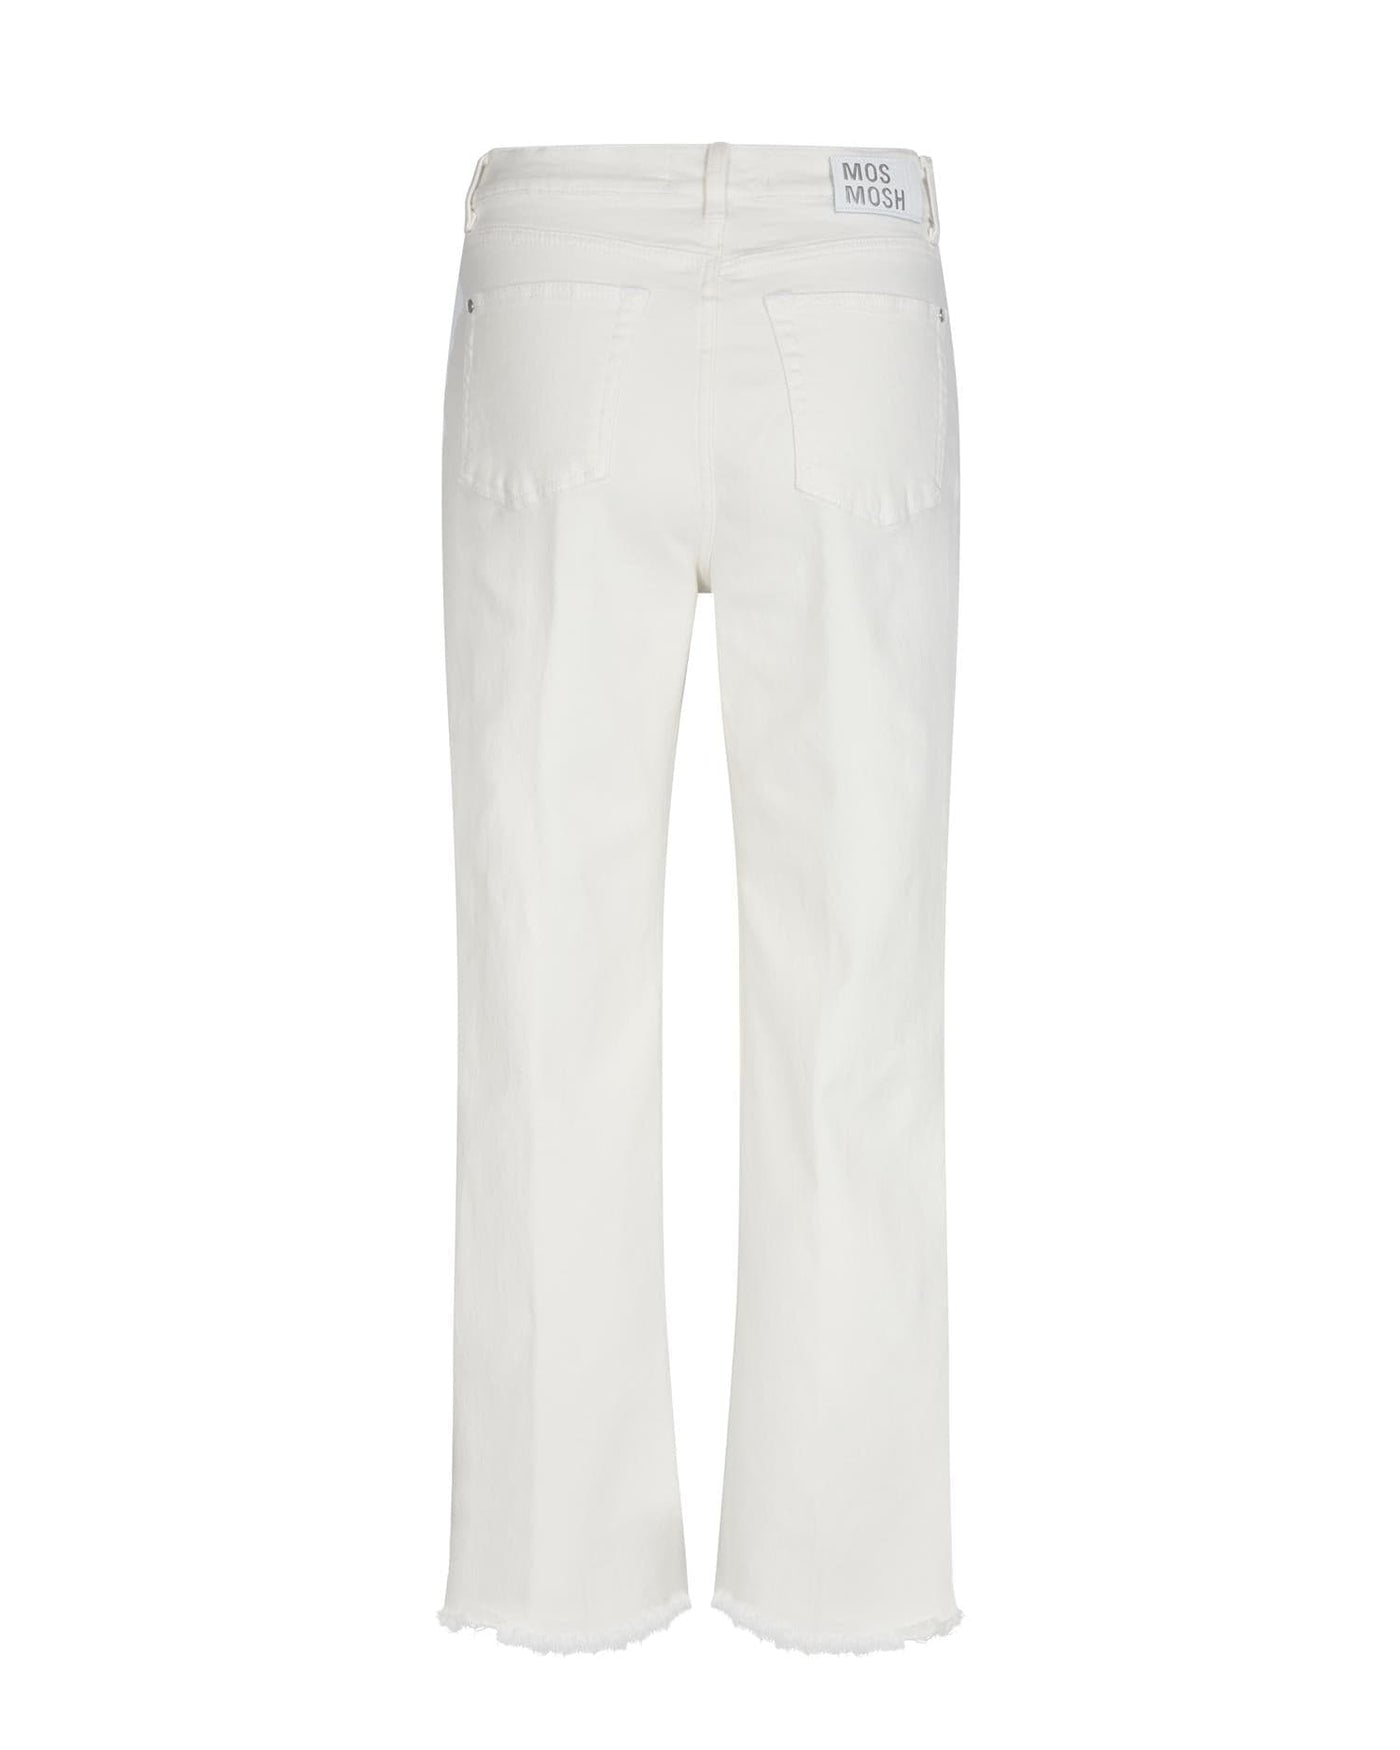 Verti Fair Jeans, White